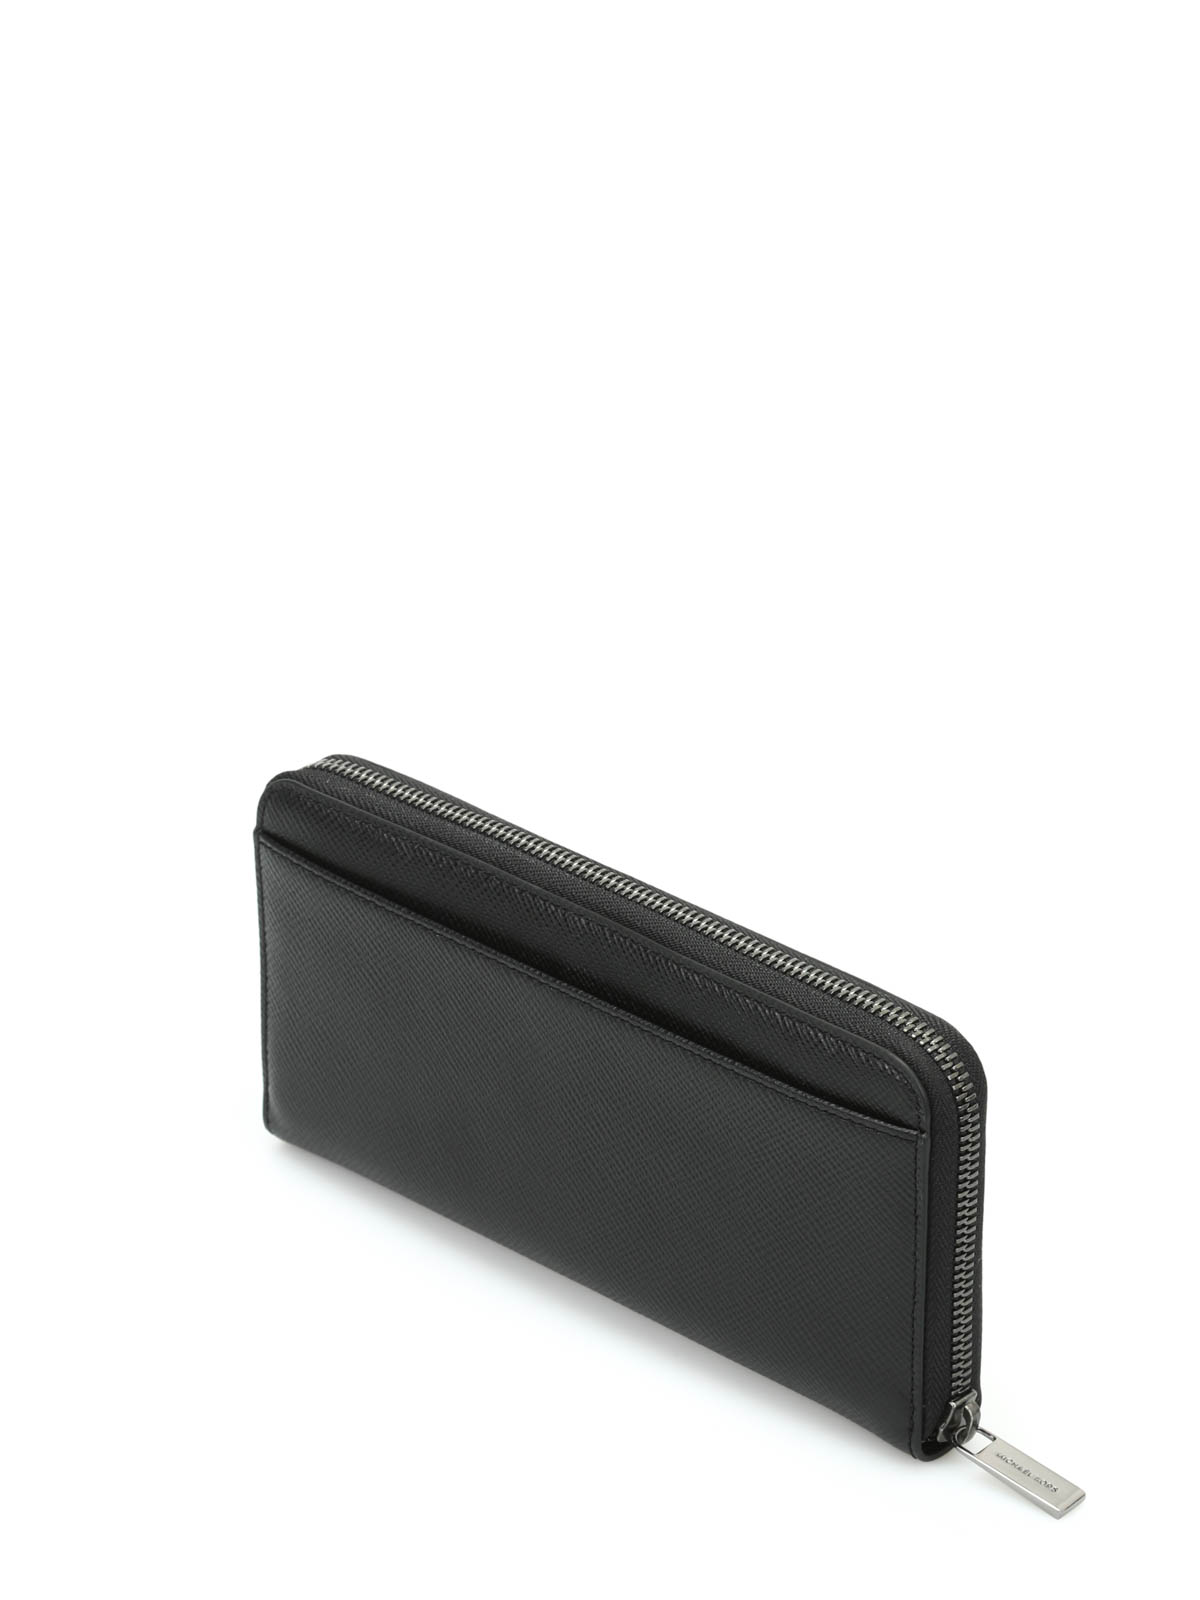 michael kors black zip around wallet